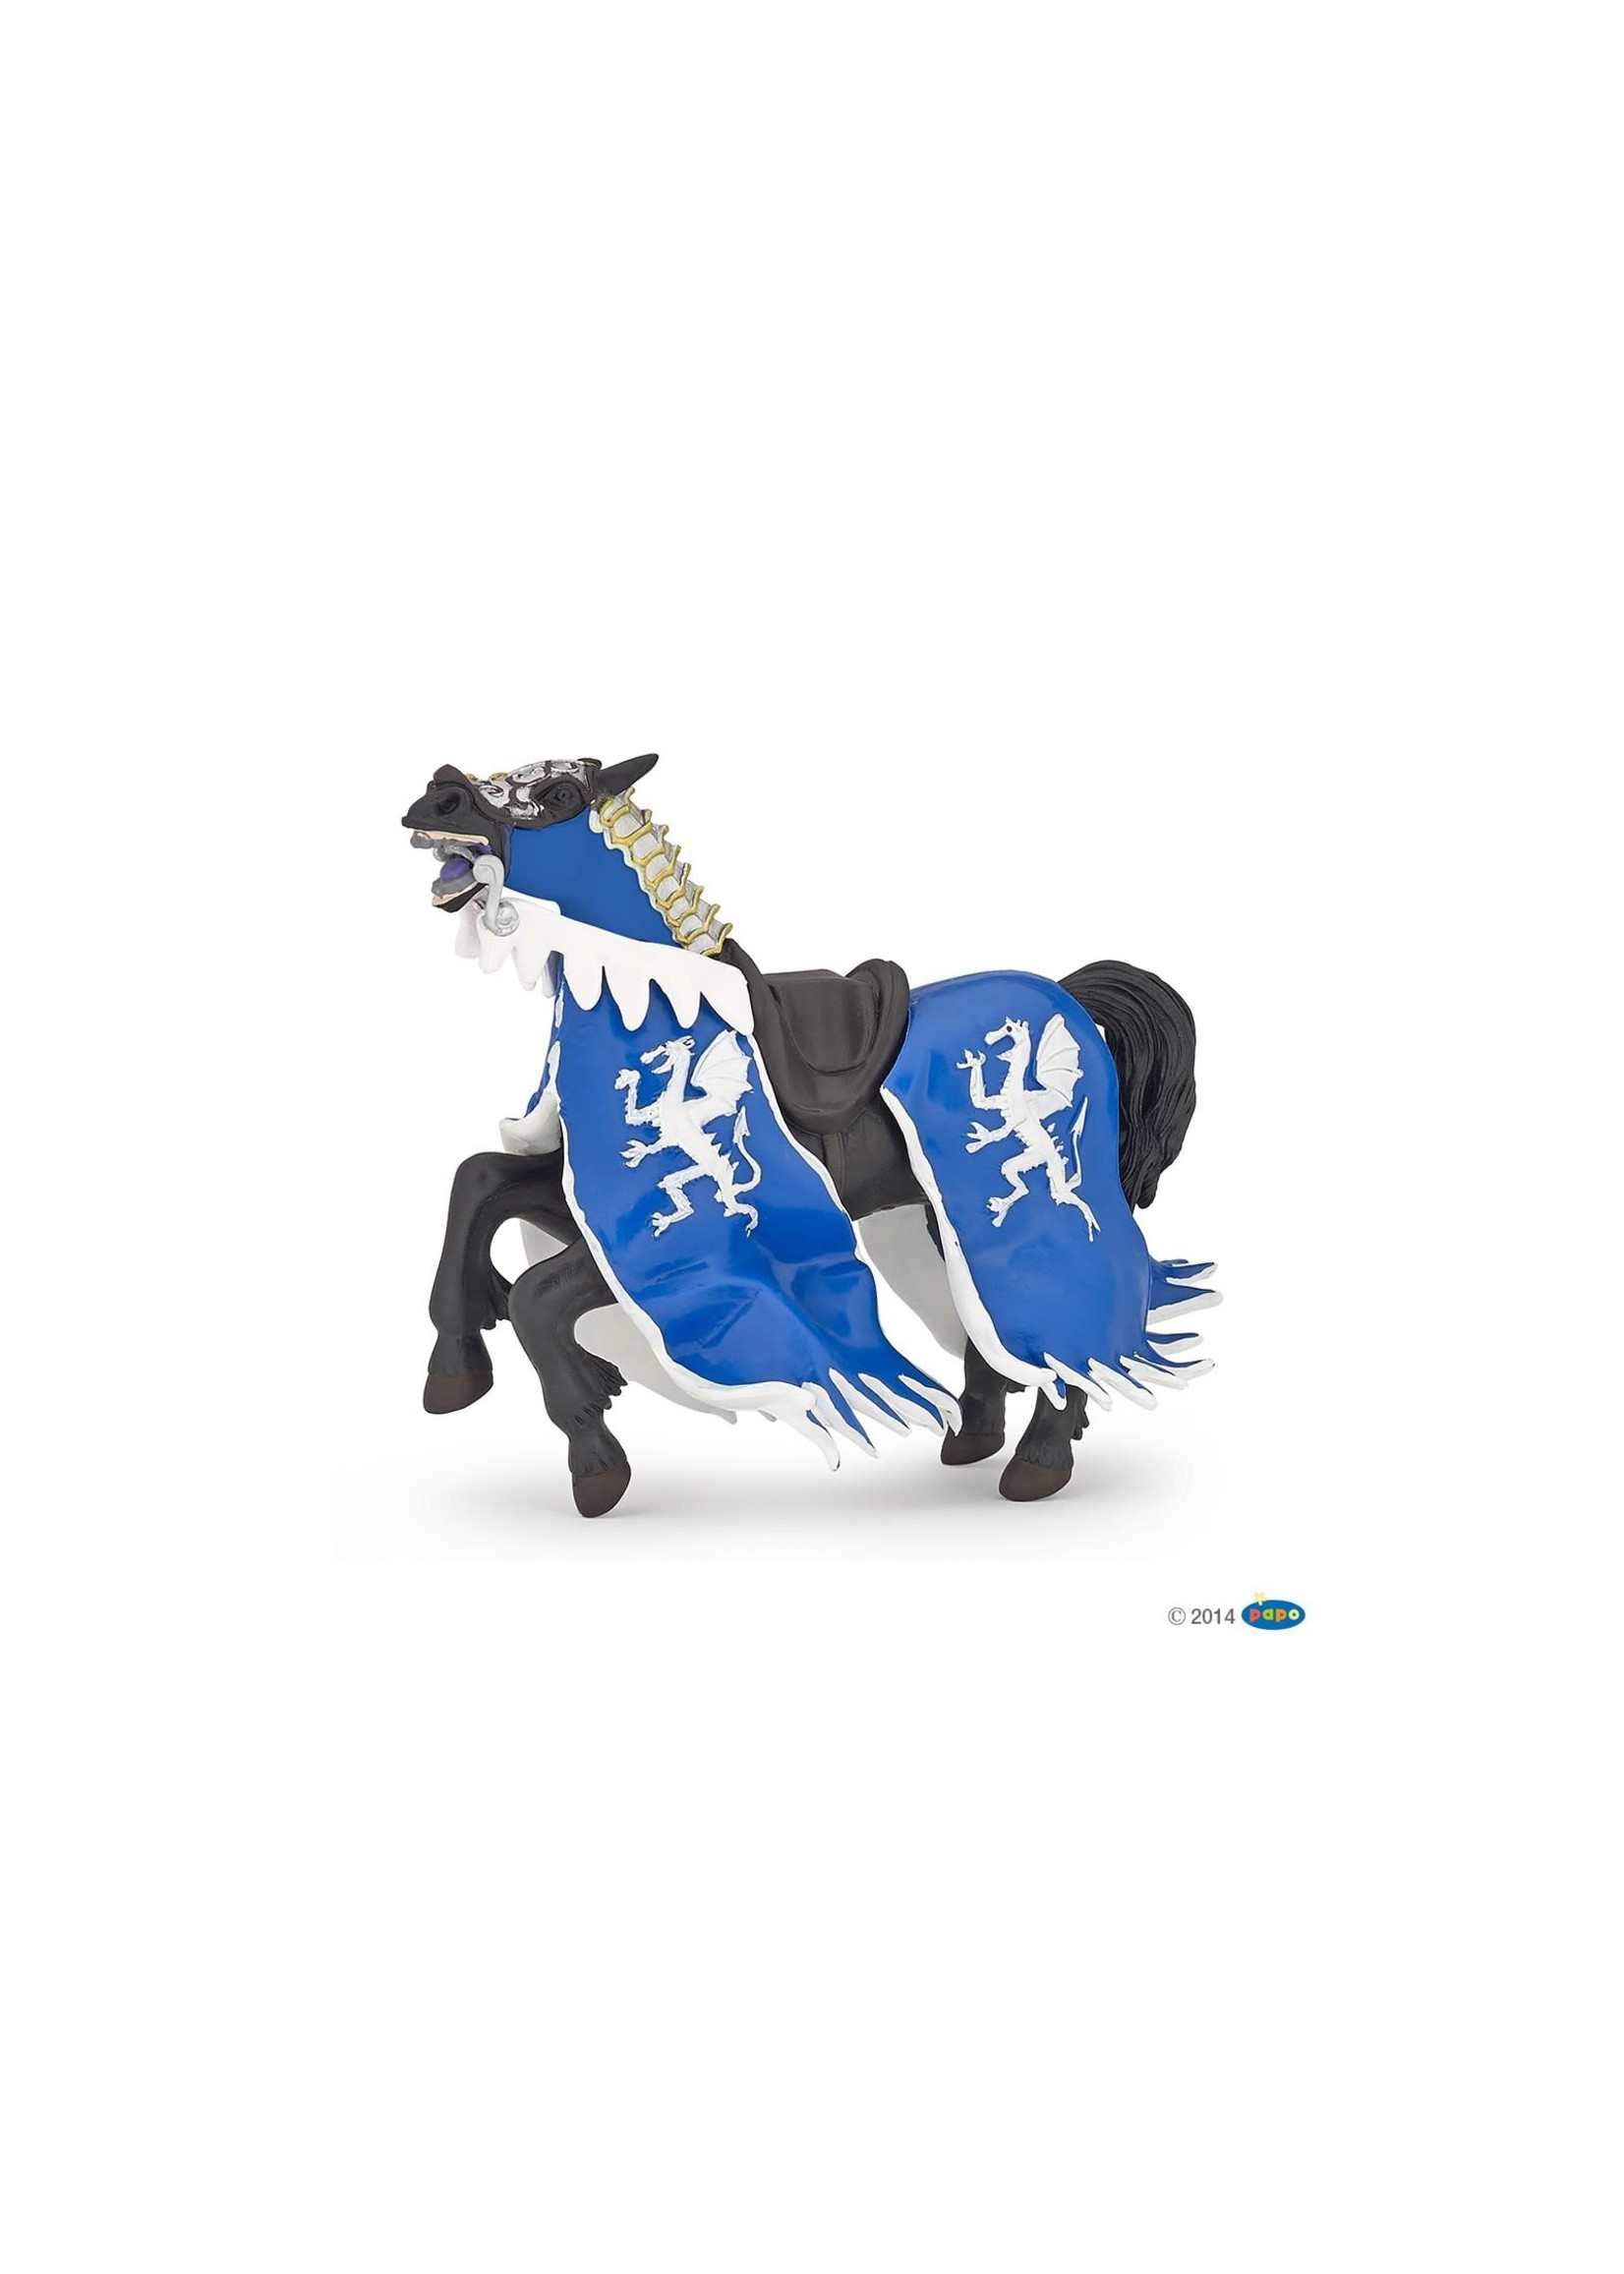 Papo Papo - Blue dragon king horse